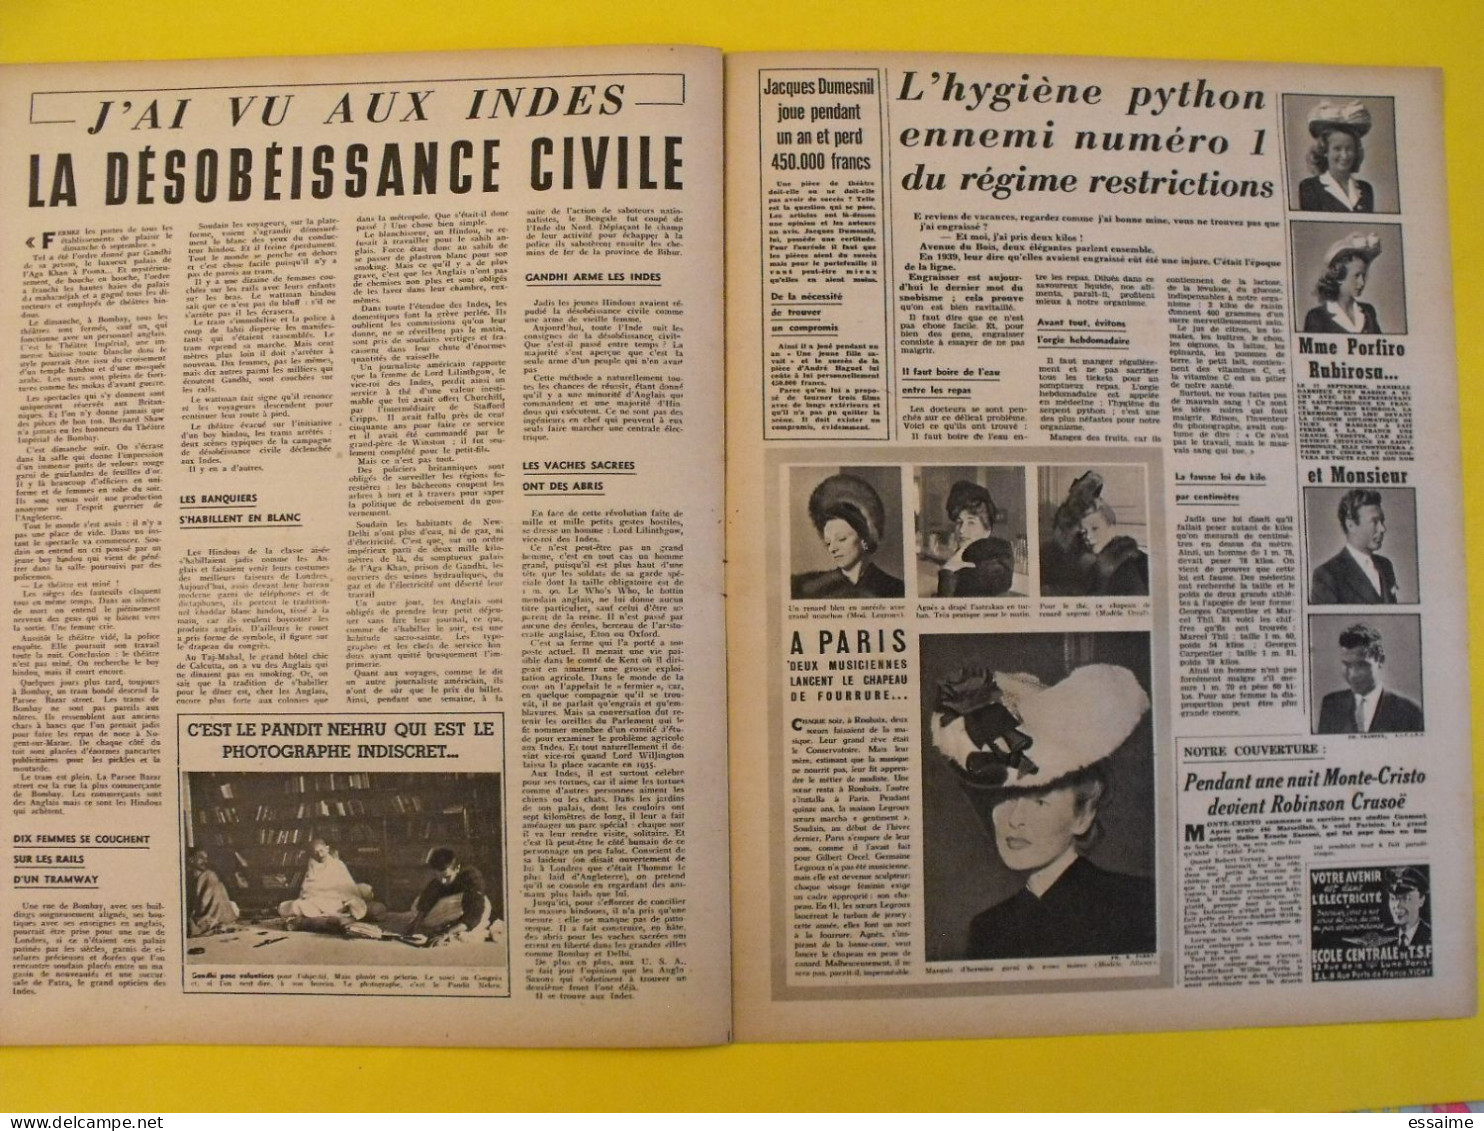 6 revues La semaine de 1942. actualités guerre photos collaboration stalingrad dakar josseline gael tobrouk moscou